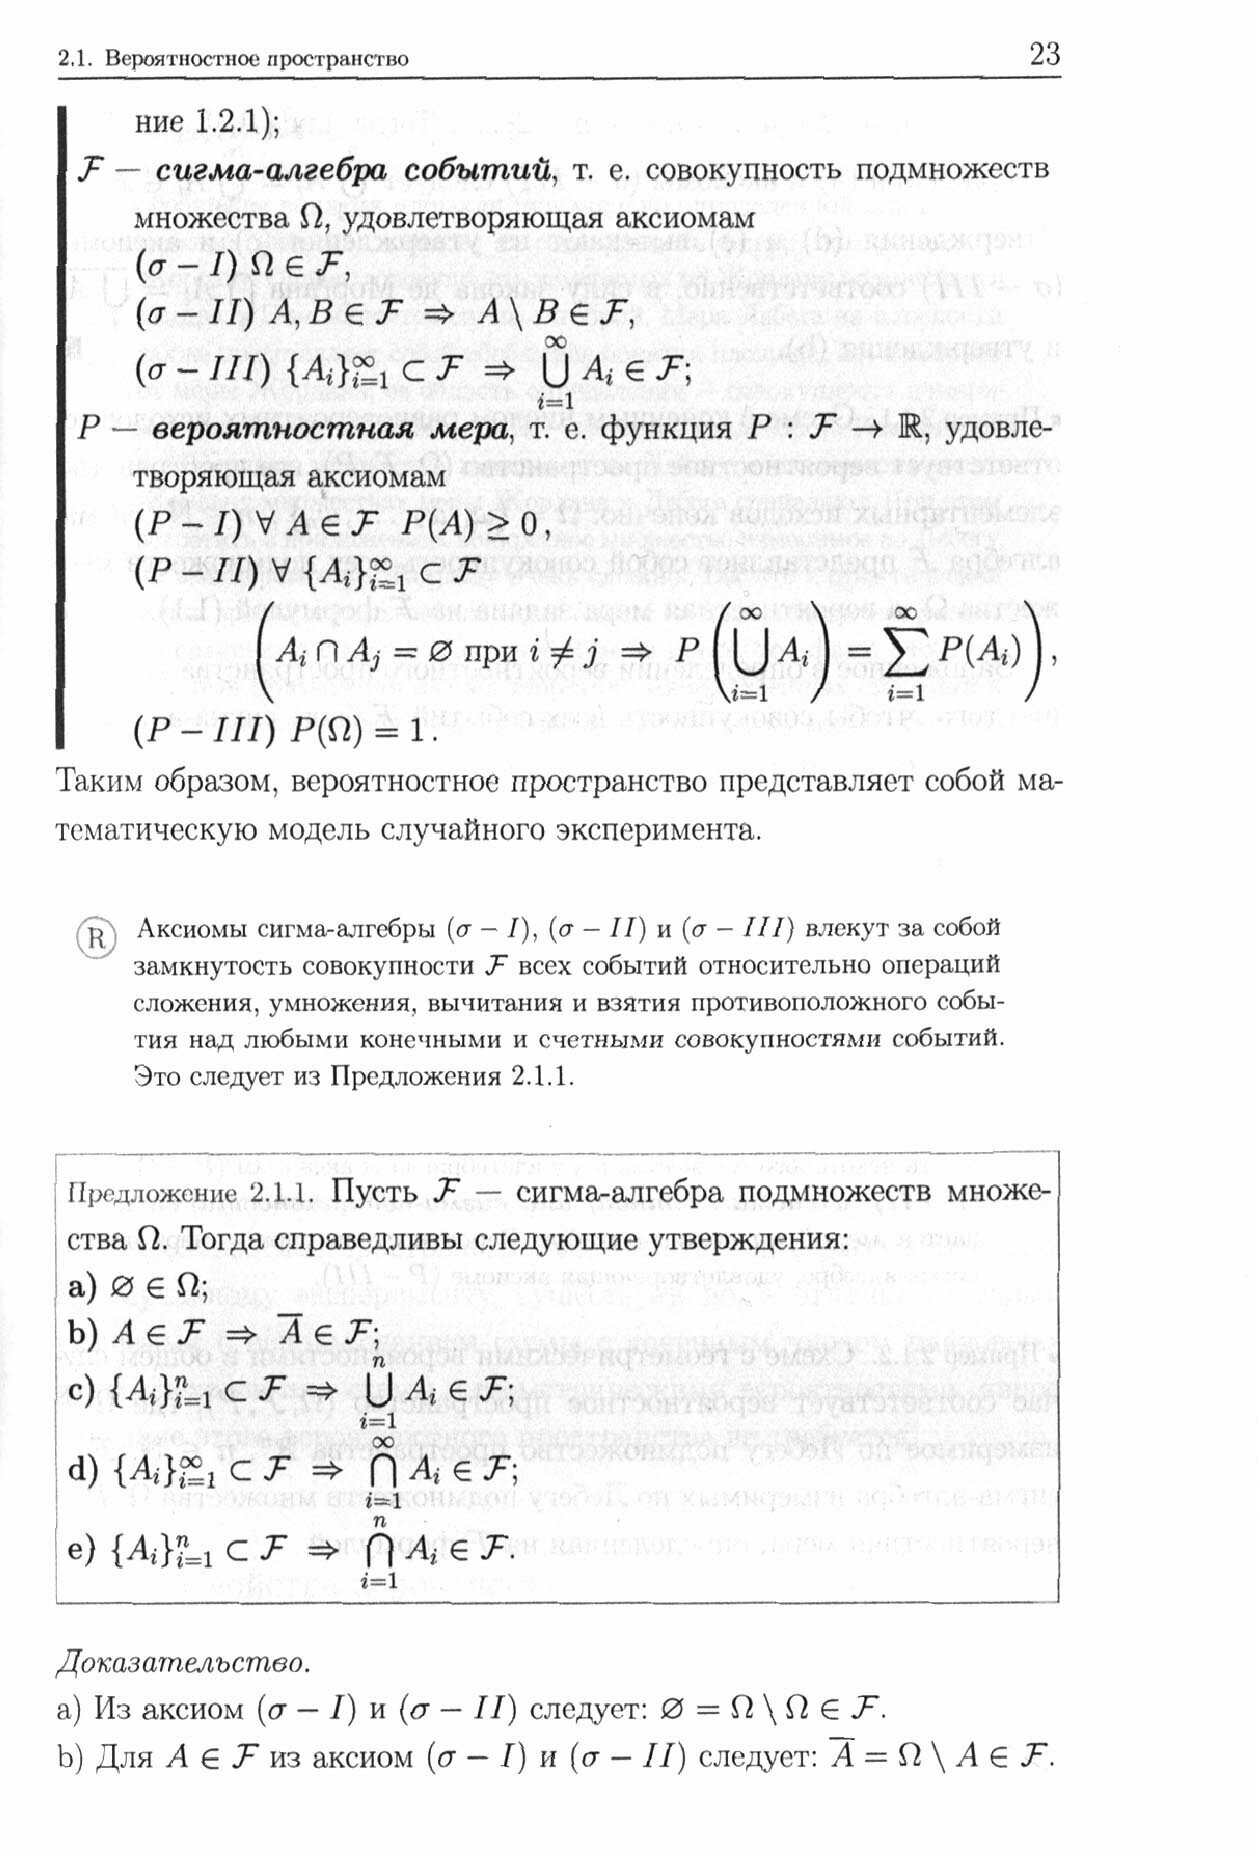 Теория вероятностей и математическая статистика - фото №2